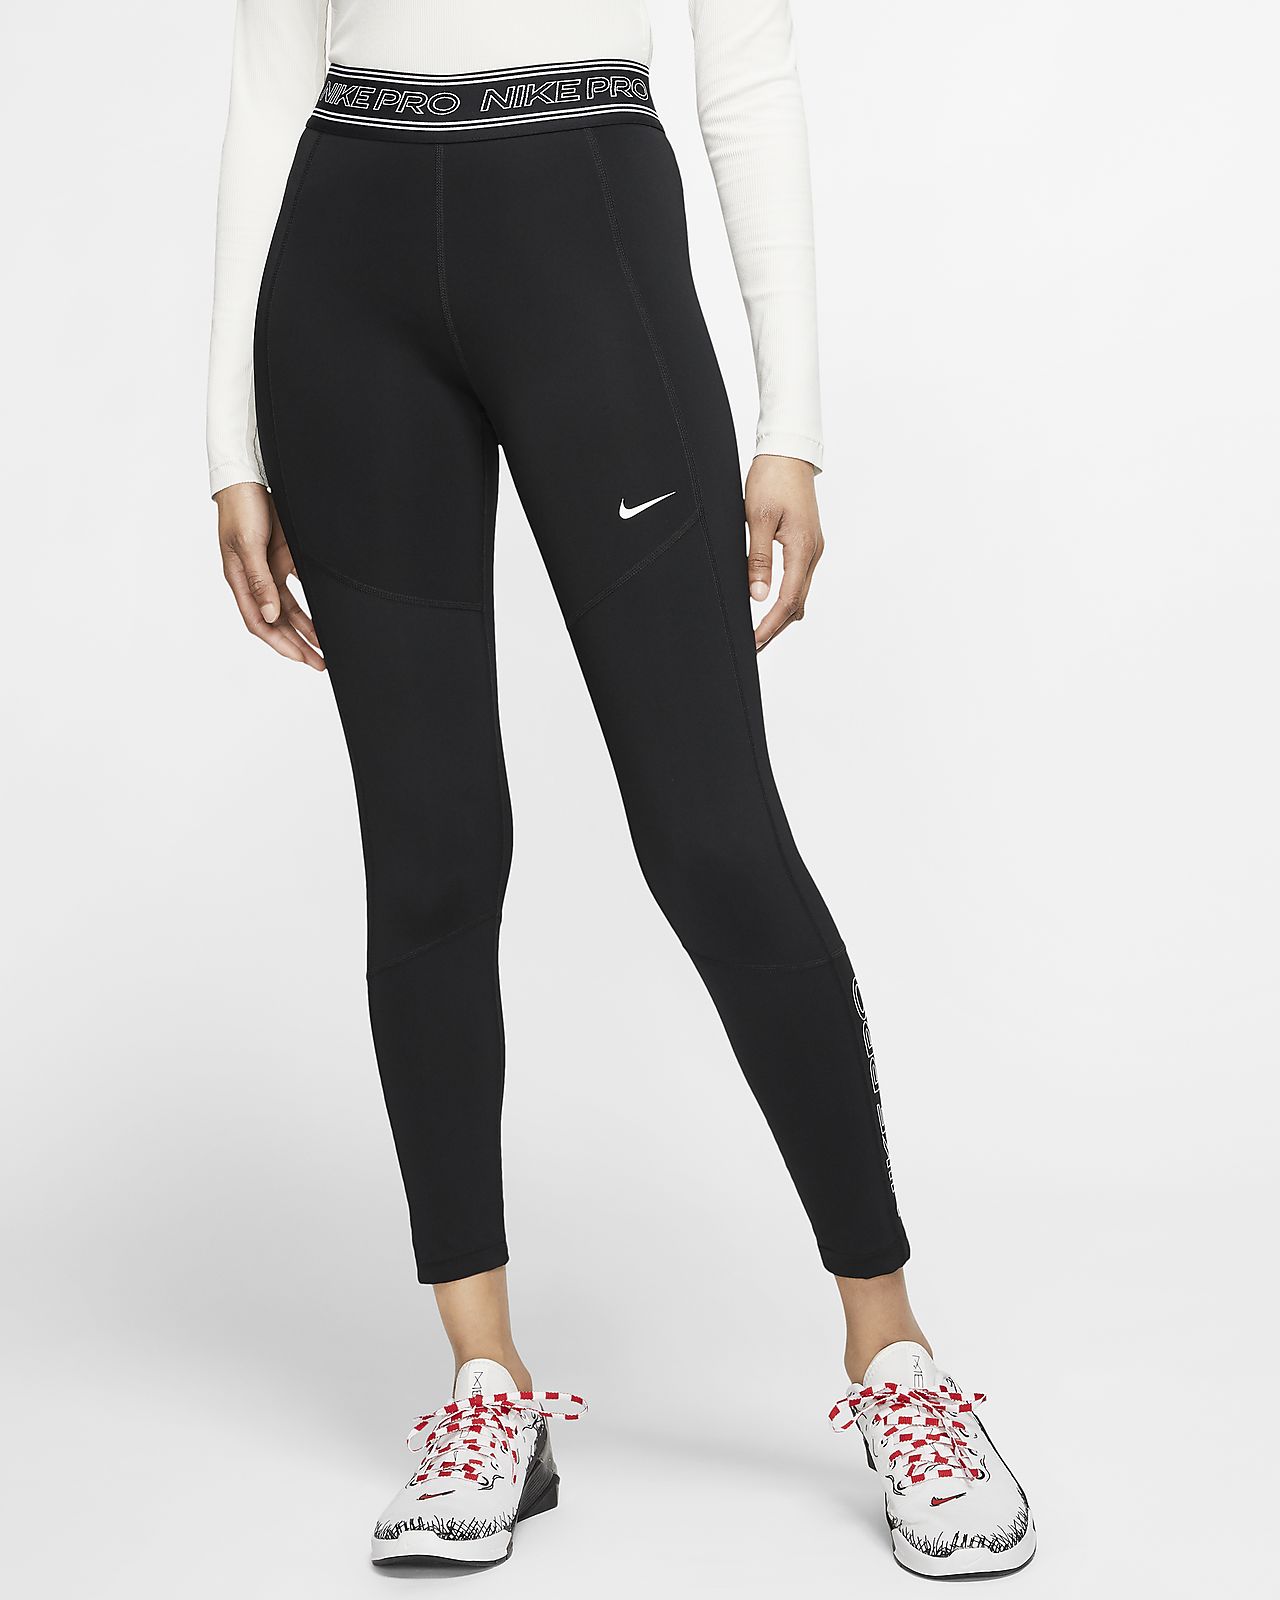 Mallas estampadas de 7/8 para mujer Nike Pro. Nike CL